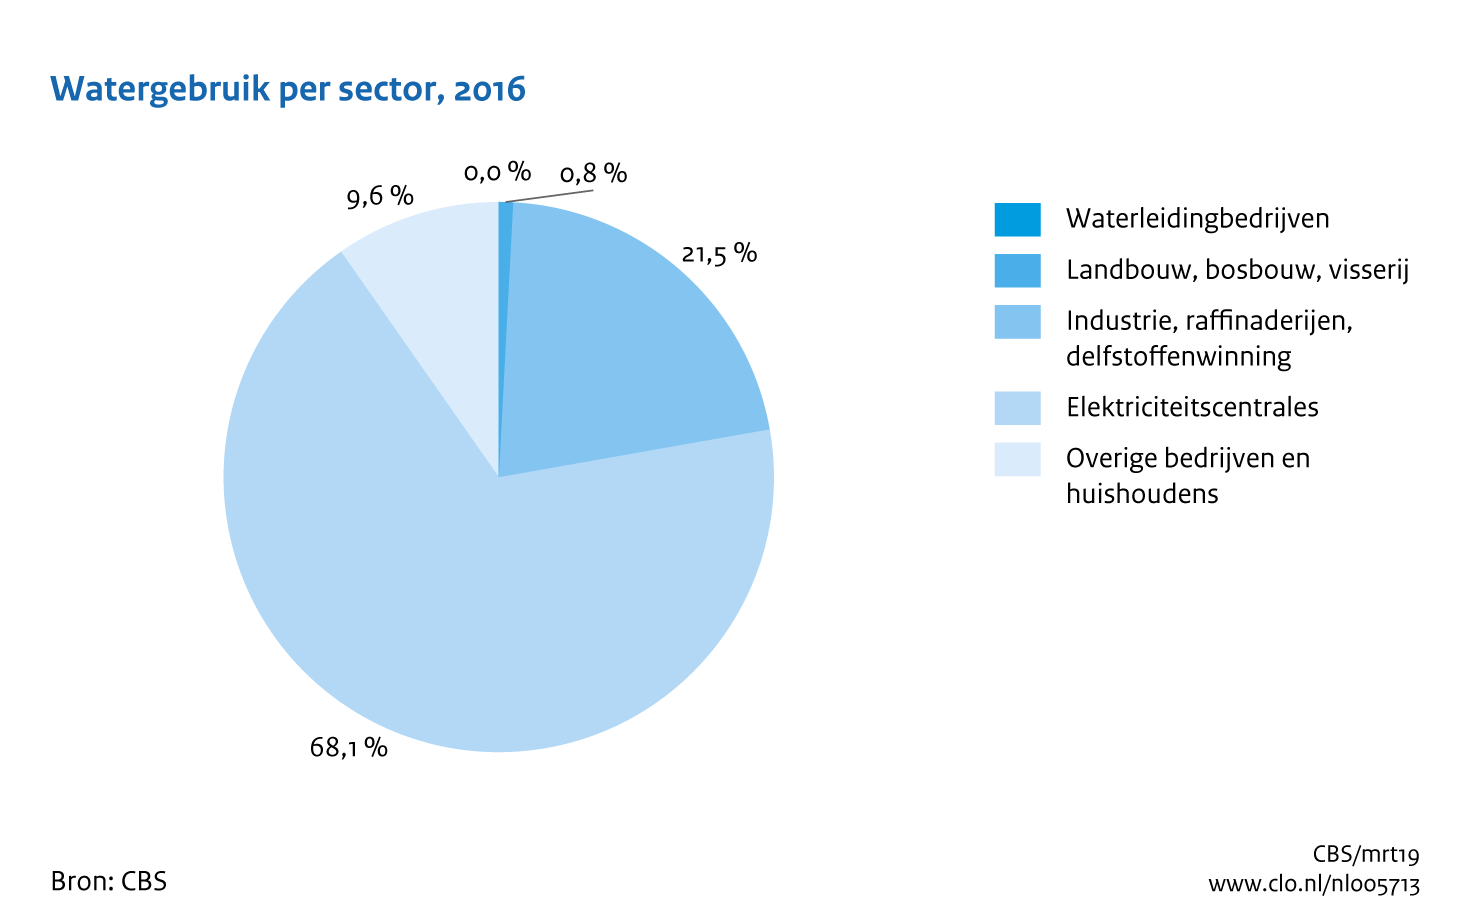 Figuur Watergebruik sectoren 2016. In de rest van de tekst wordt deze figuur uitgebreider uitgelegd.